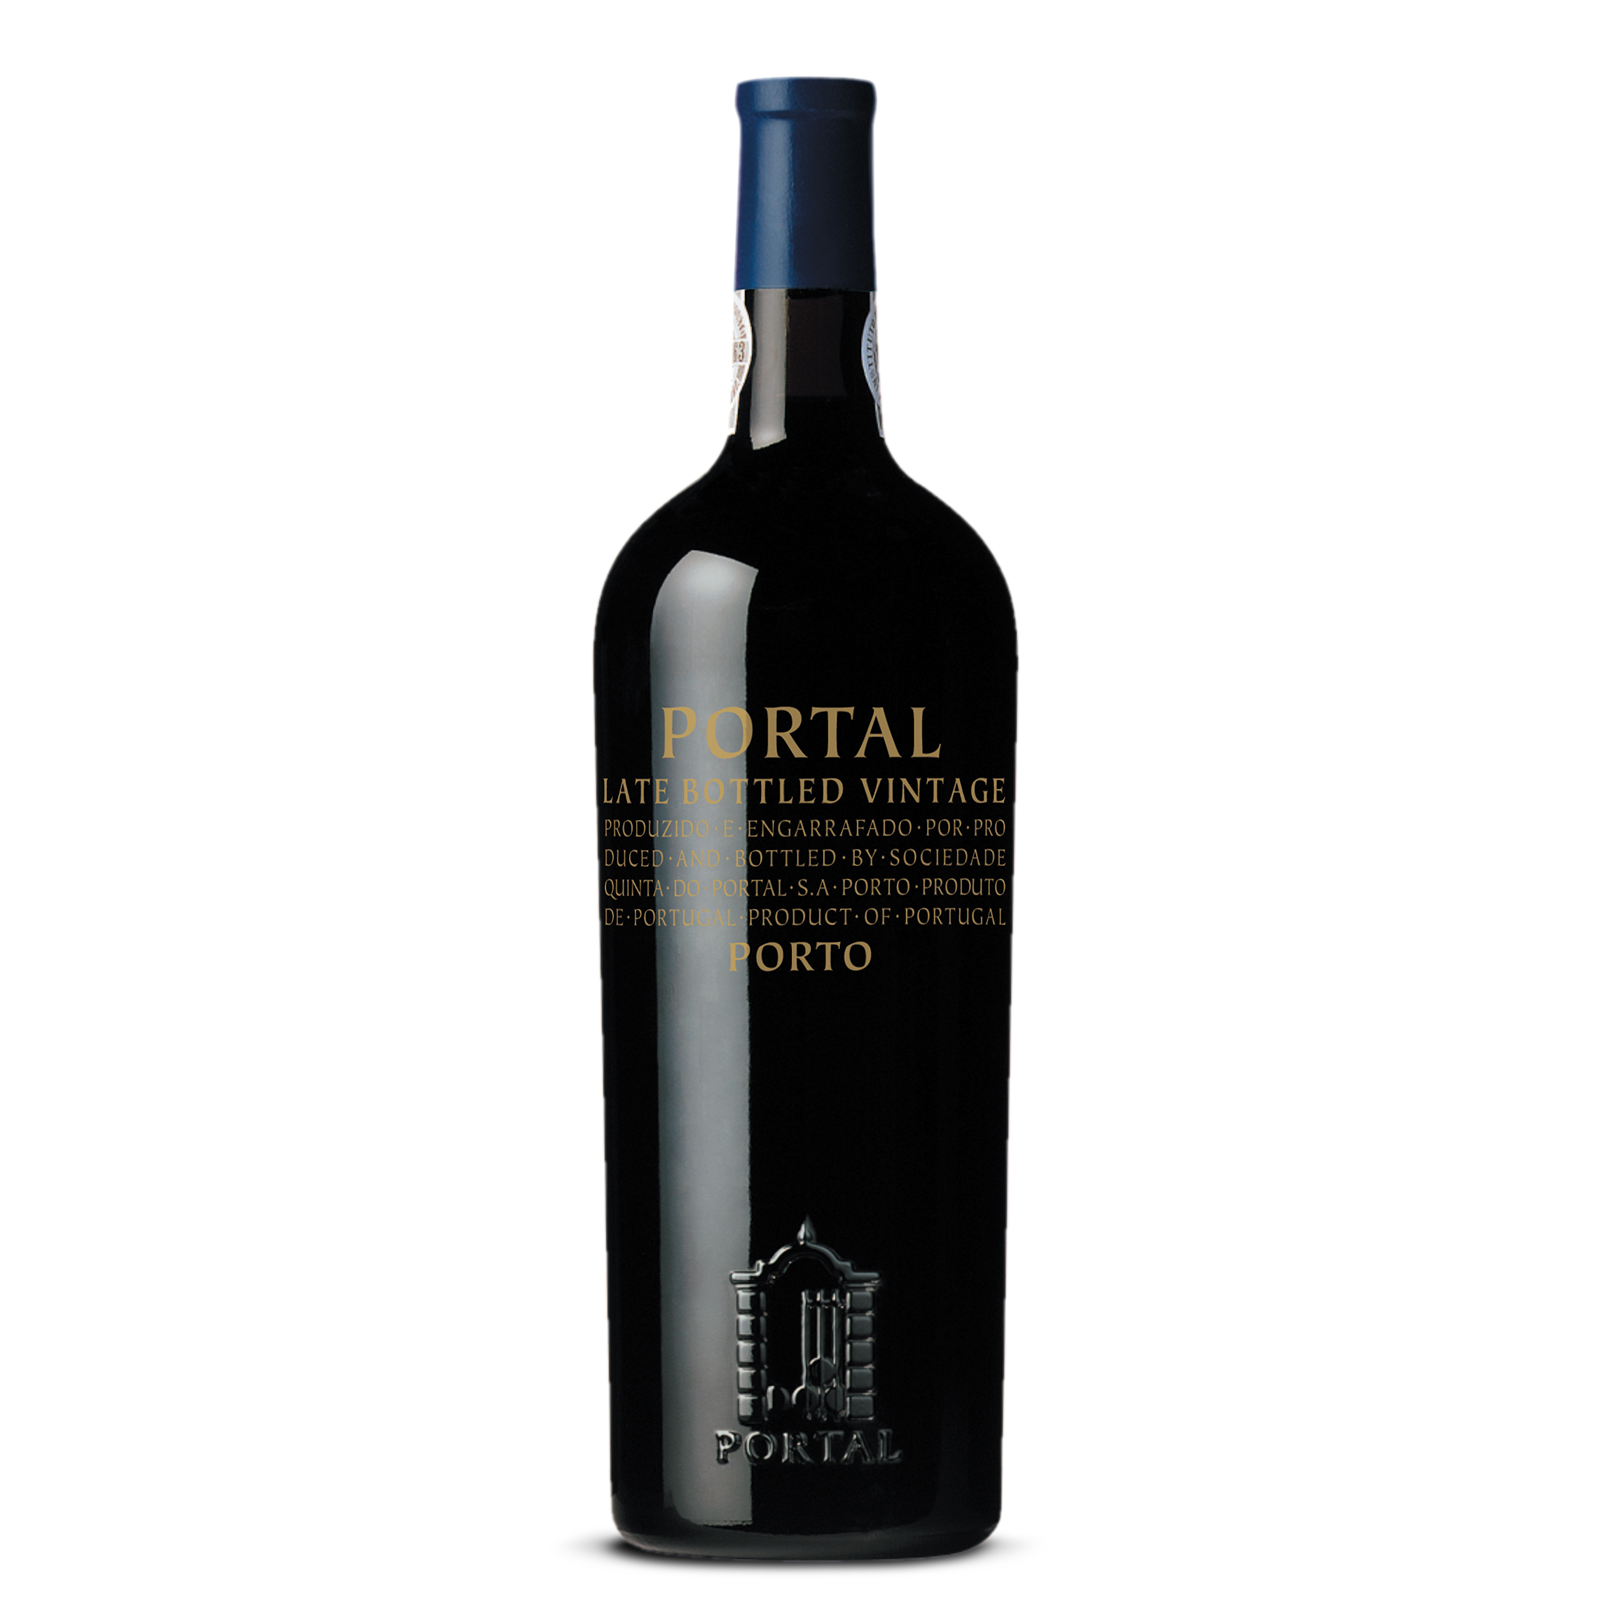 Portal Late Bottled Vintage 2014 - Portwein 0,75l - 20 %vol.